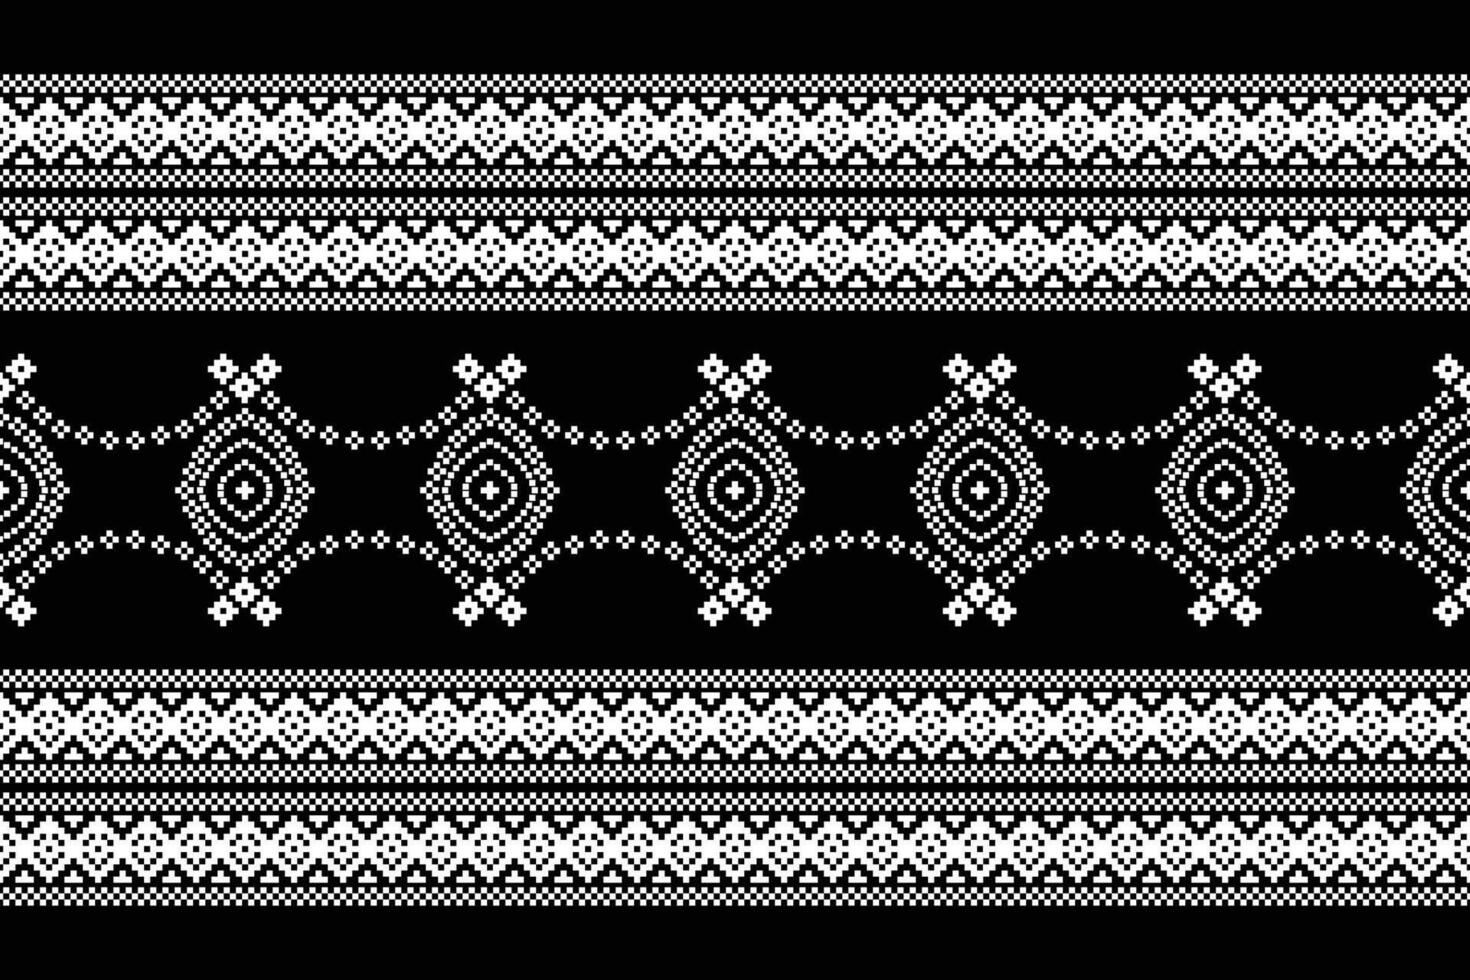 traditionnel noir ethnique motifs ikat géométrique en tissu modèle traverser point.ikat broderie ethnique Oriental pixel noir arrière-plan.abstrait, illustration. texture, décoration, papier peint. vecteur